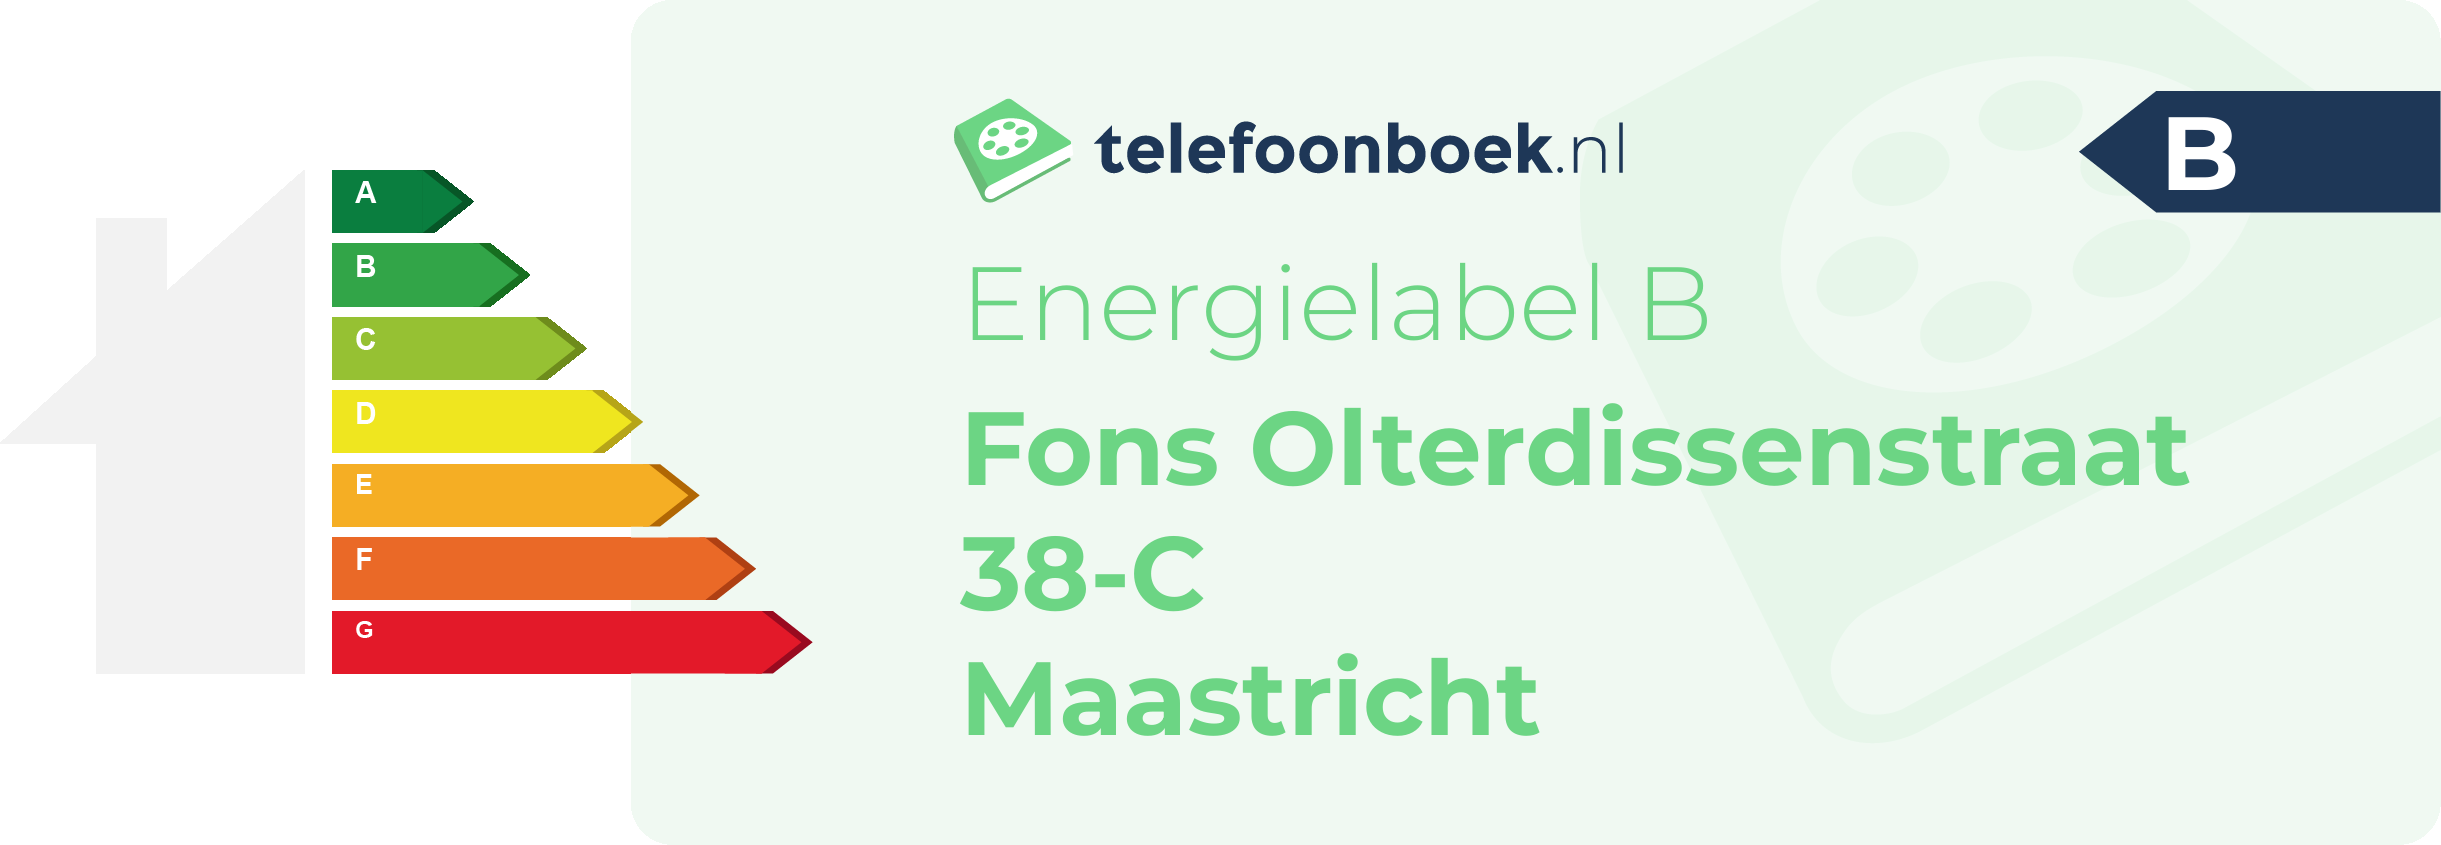 Energielabel Fons Olterdissenstraat 38-C Maastricht